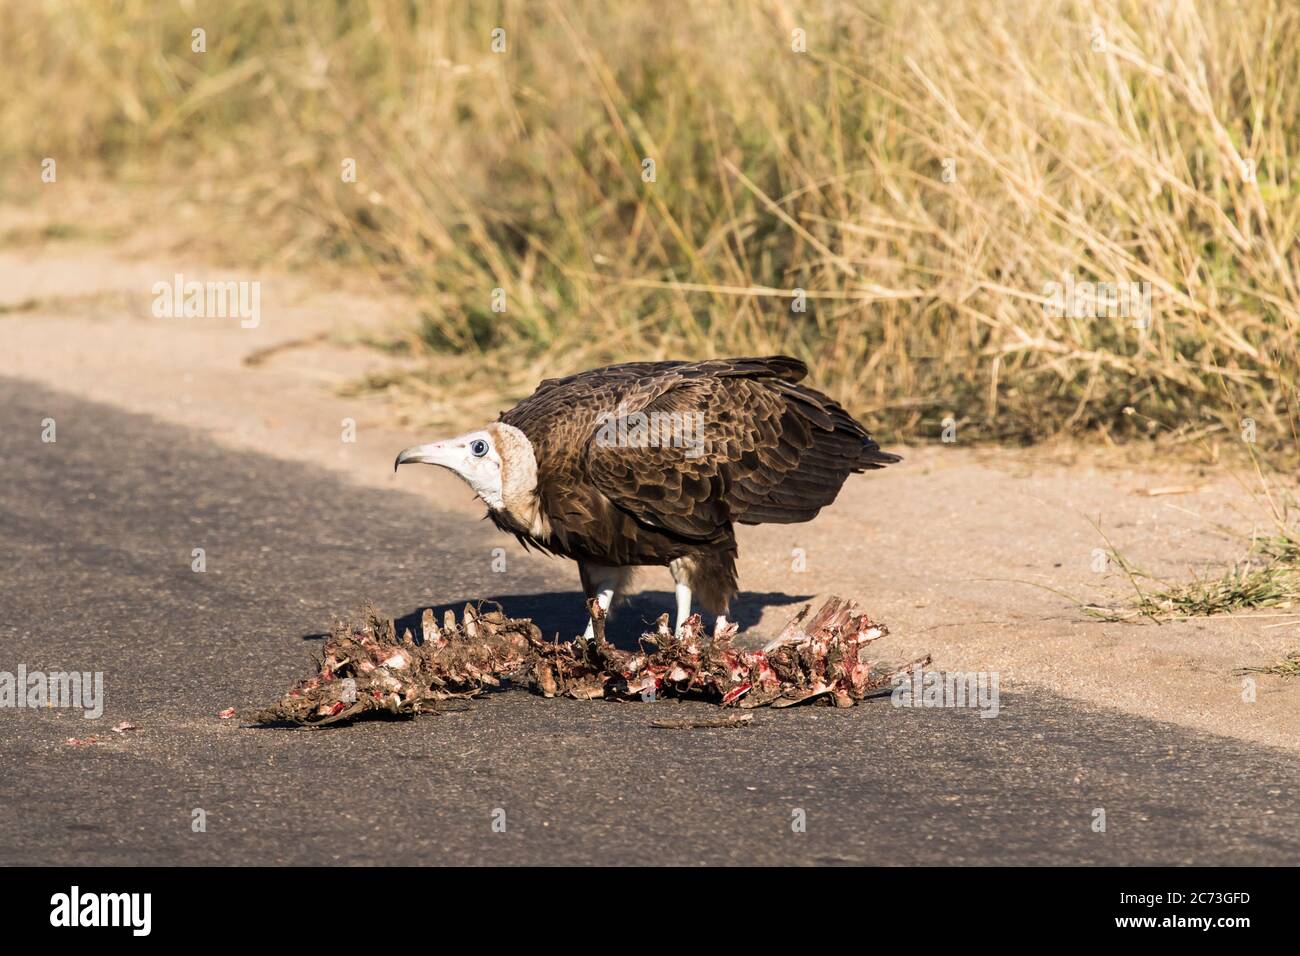 Hooded Vulture manger carcasse et guetteur sur la route, Parc national Kruger, province de Mpumalanga, Afrique du Sud, Afrique Banque D'Images